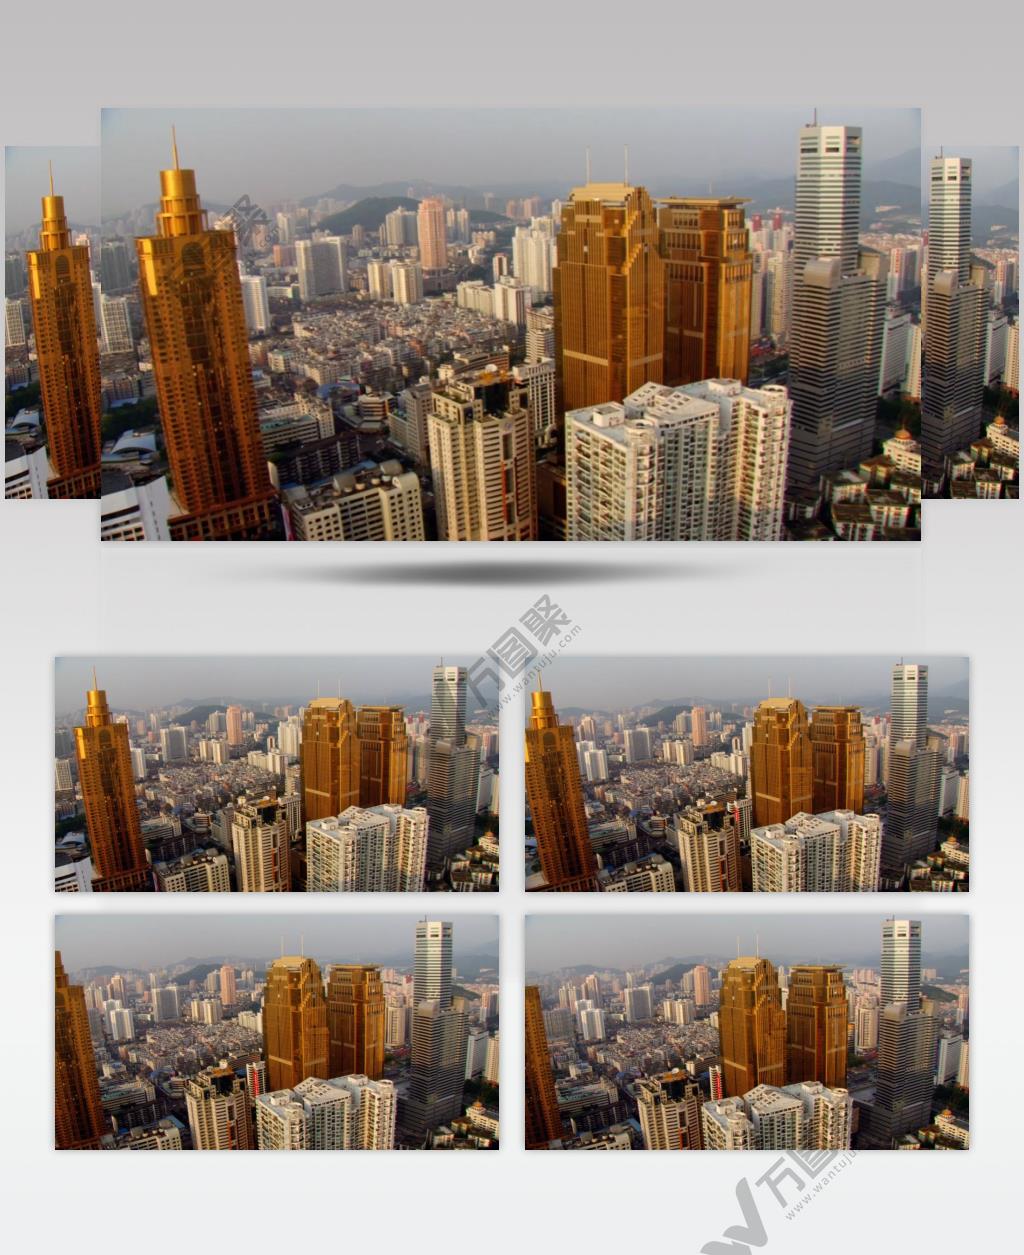 中国上海广州城市地标建筑高端办公楼夜景航拍宣传片高清视频素材现代城市10